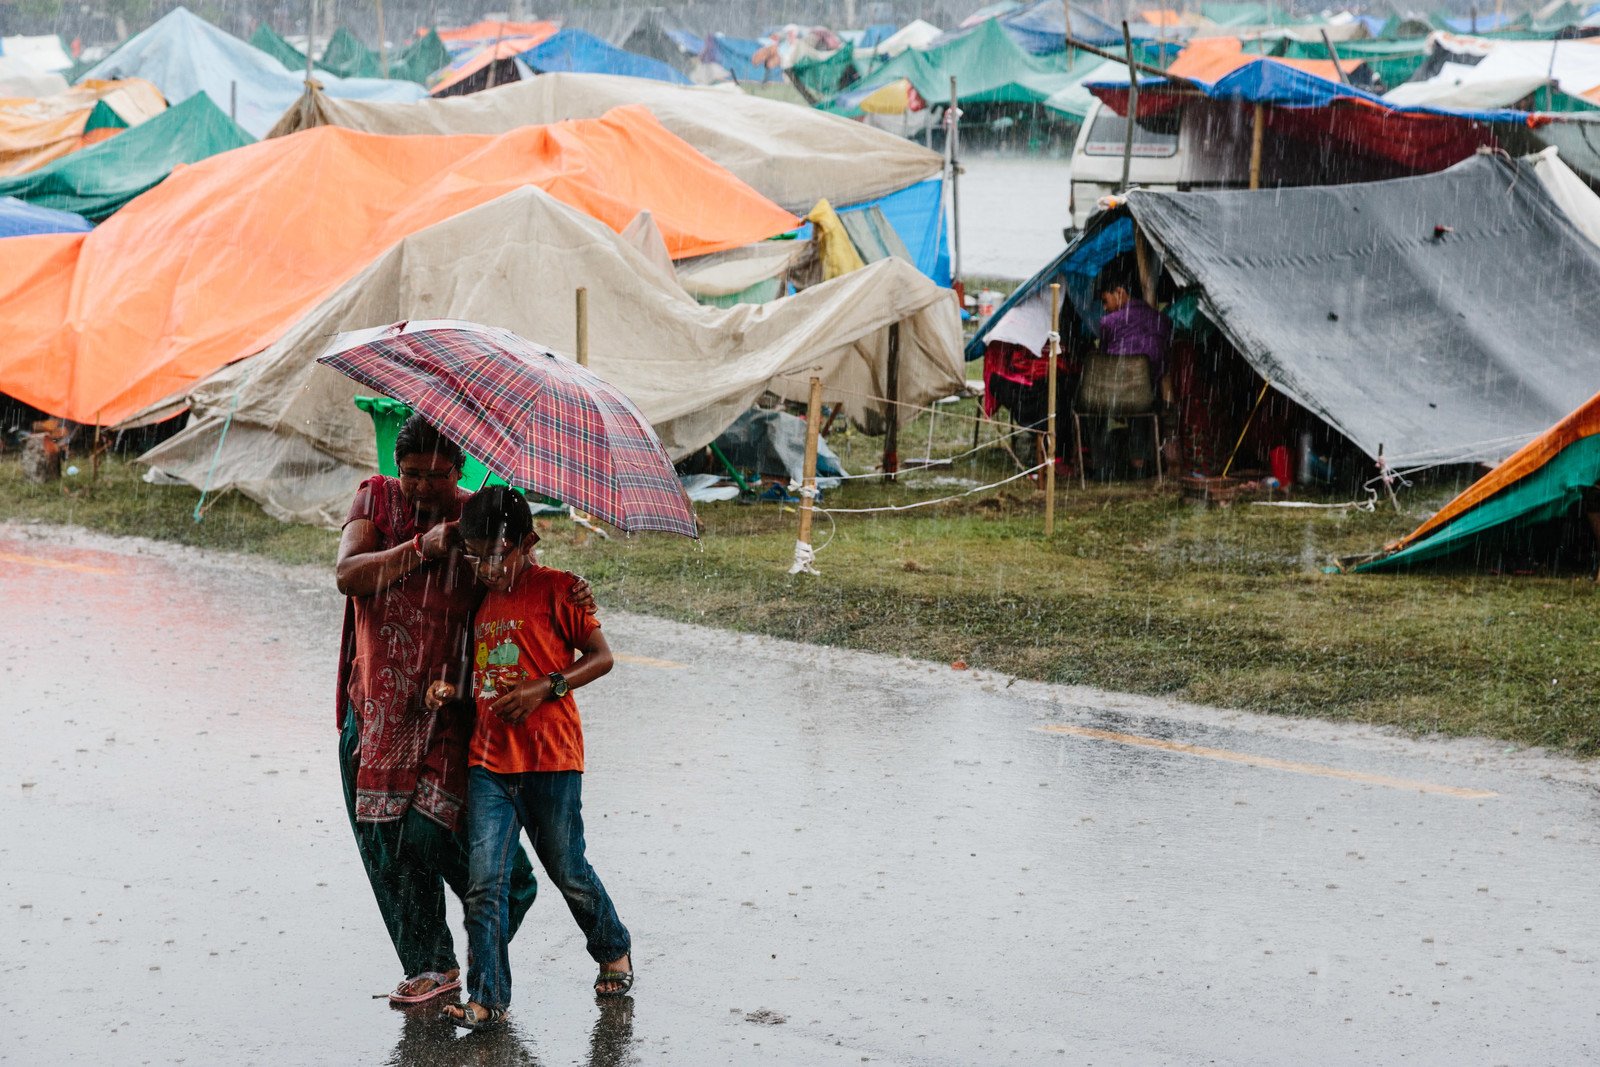 尼泊尔地震发生后，余震不断，灾民连续多天都只敢留在室外，却遇上多场暴雨，处境更艰难。(摄影: Aubrey Wade / Oxfam)